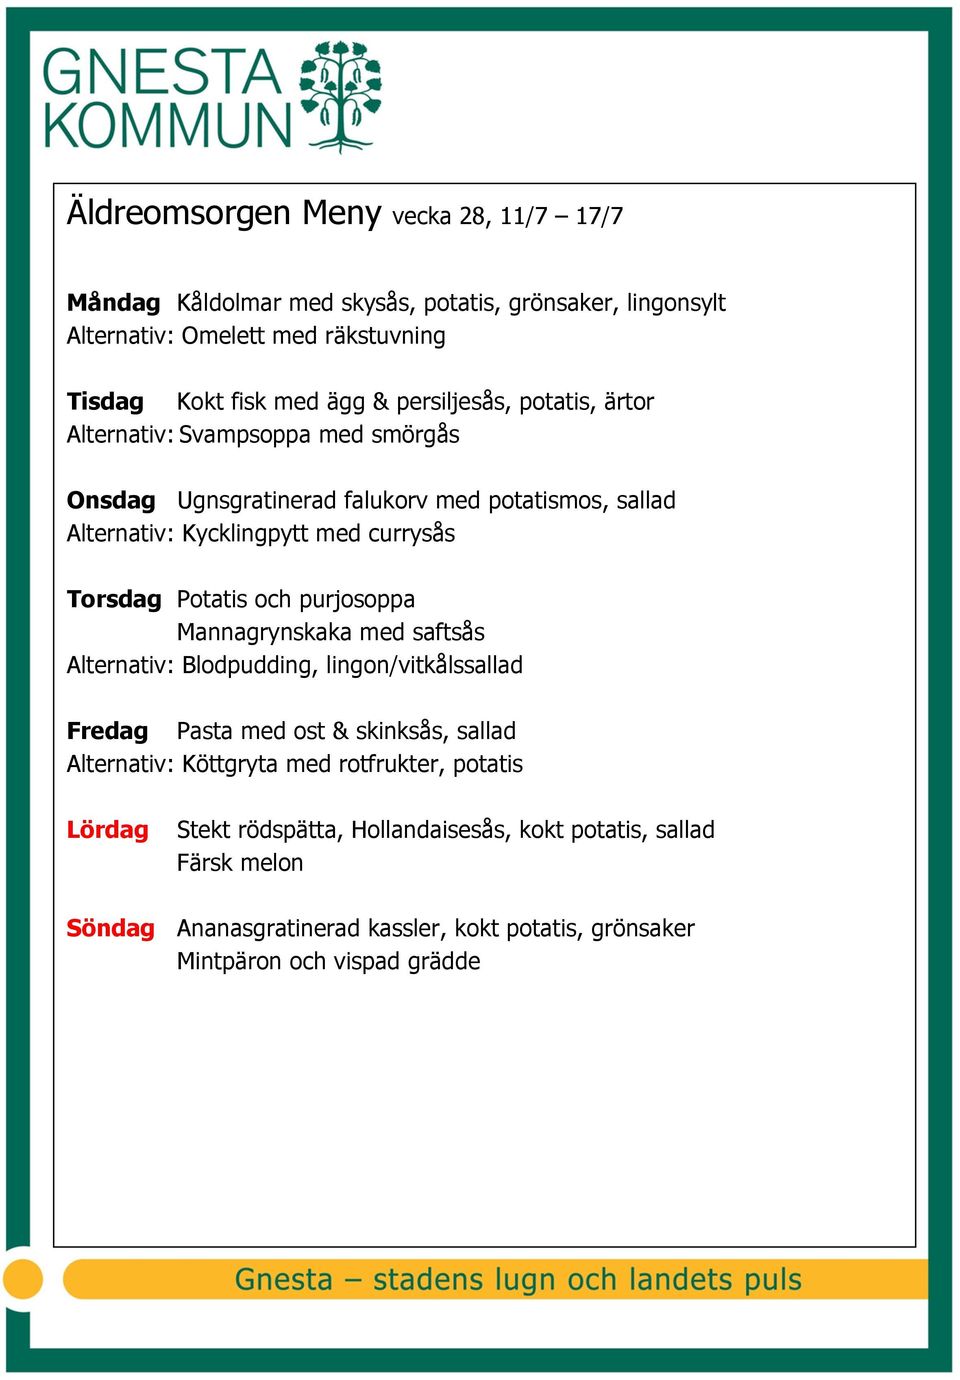 Potatis och purjosoppa Mannagrynskaka med saftsås Alternativ: Blodpudding, lingon/vitkålssallad Fredag Pasta med ost & skinksås, sallad Alternativ: Köttgryta med